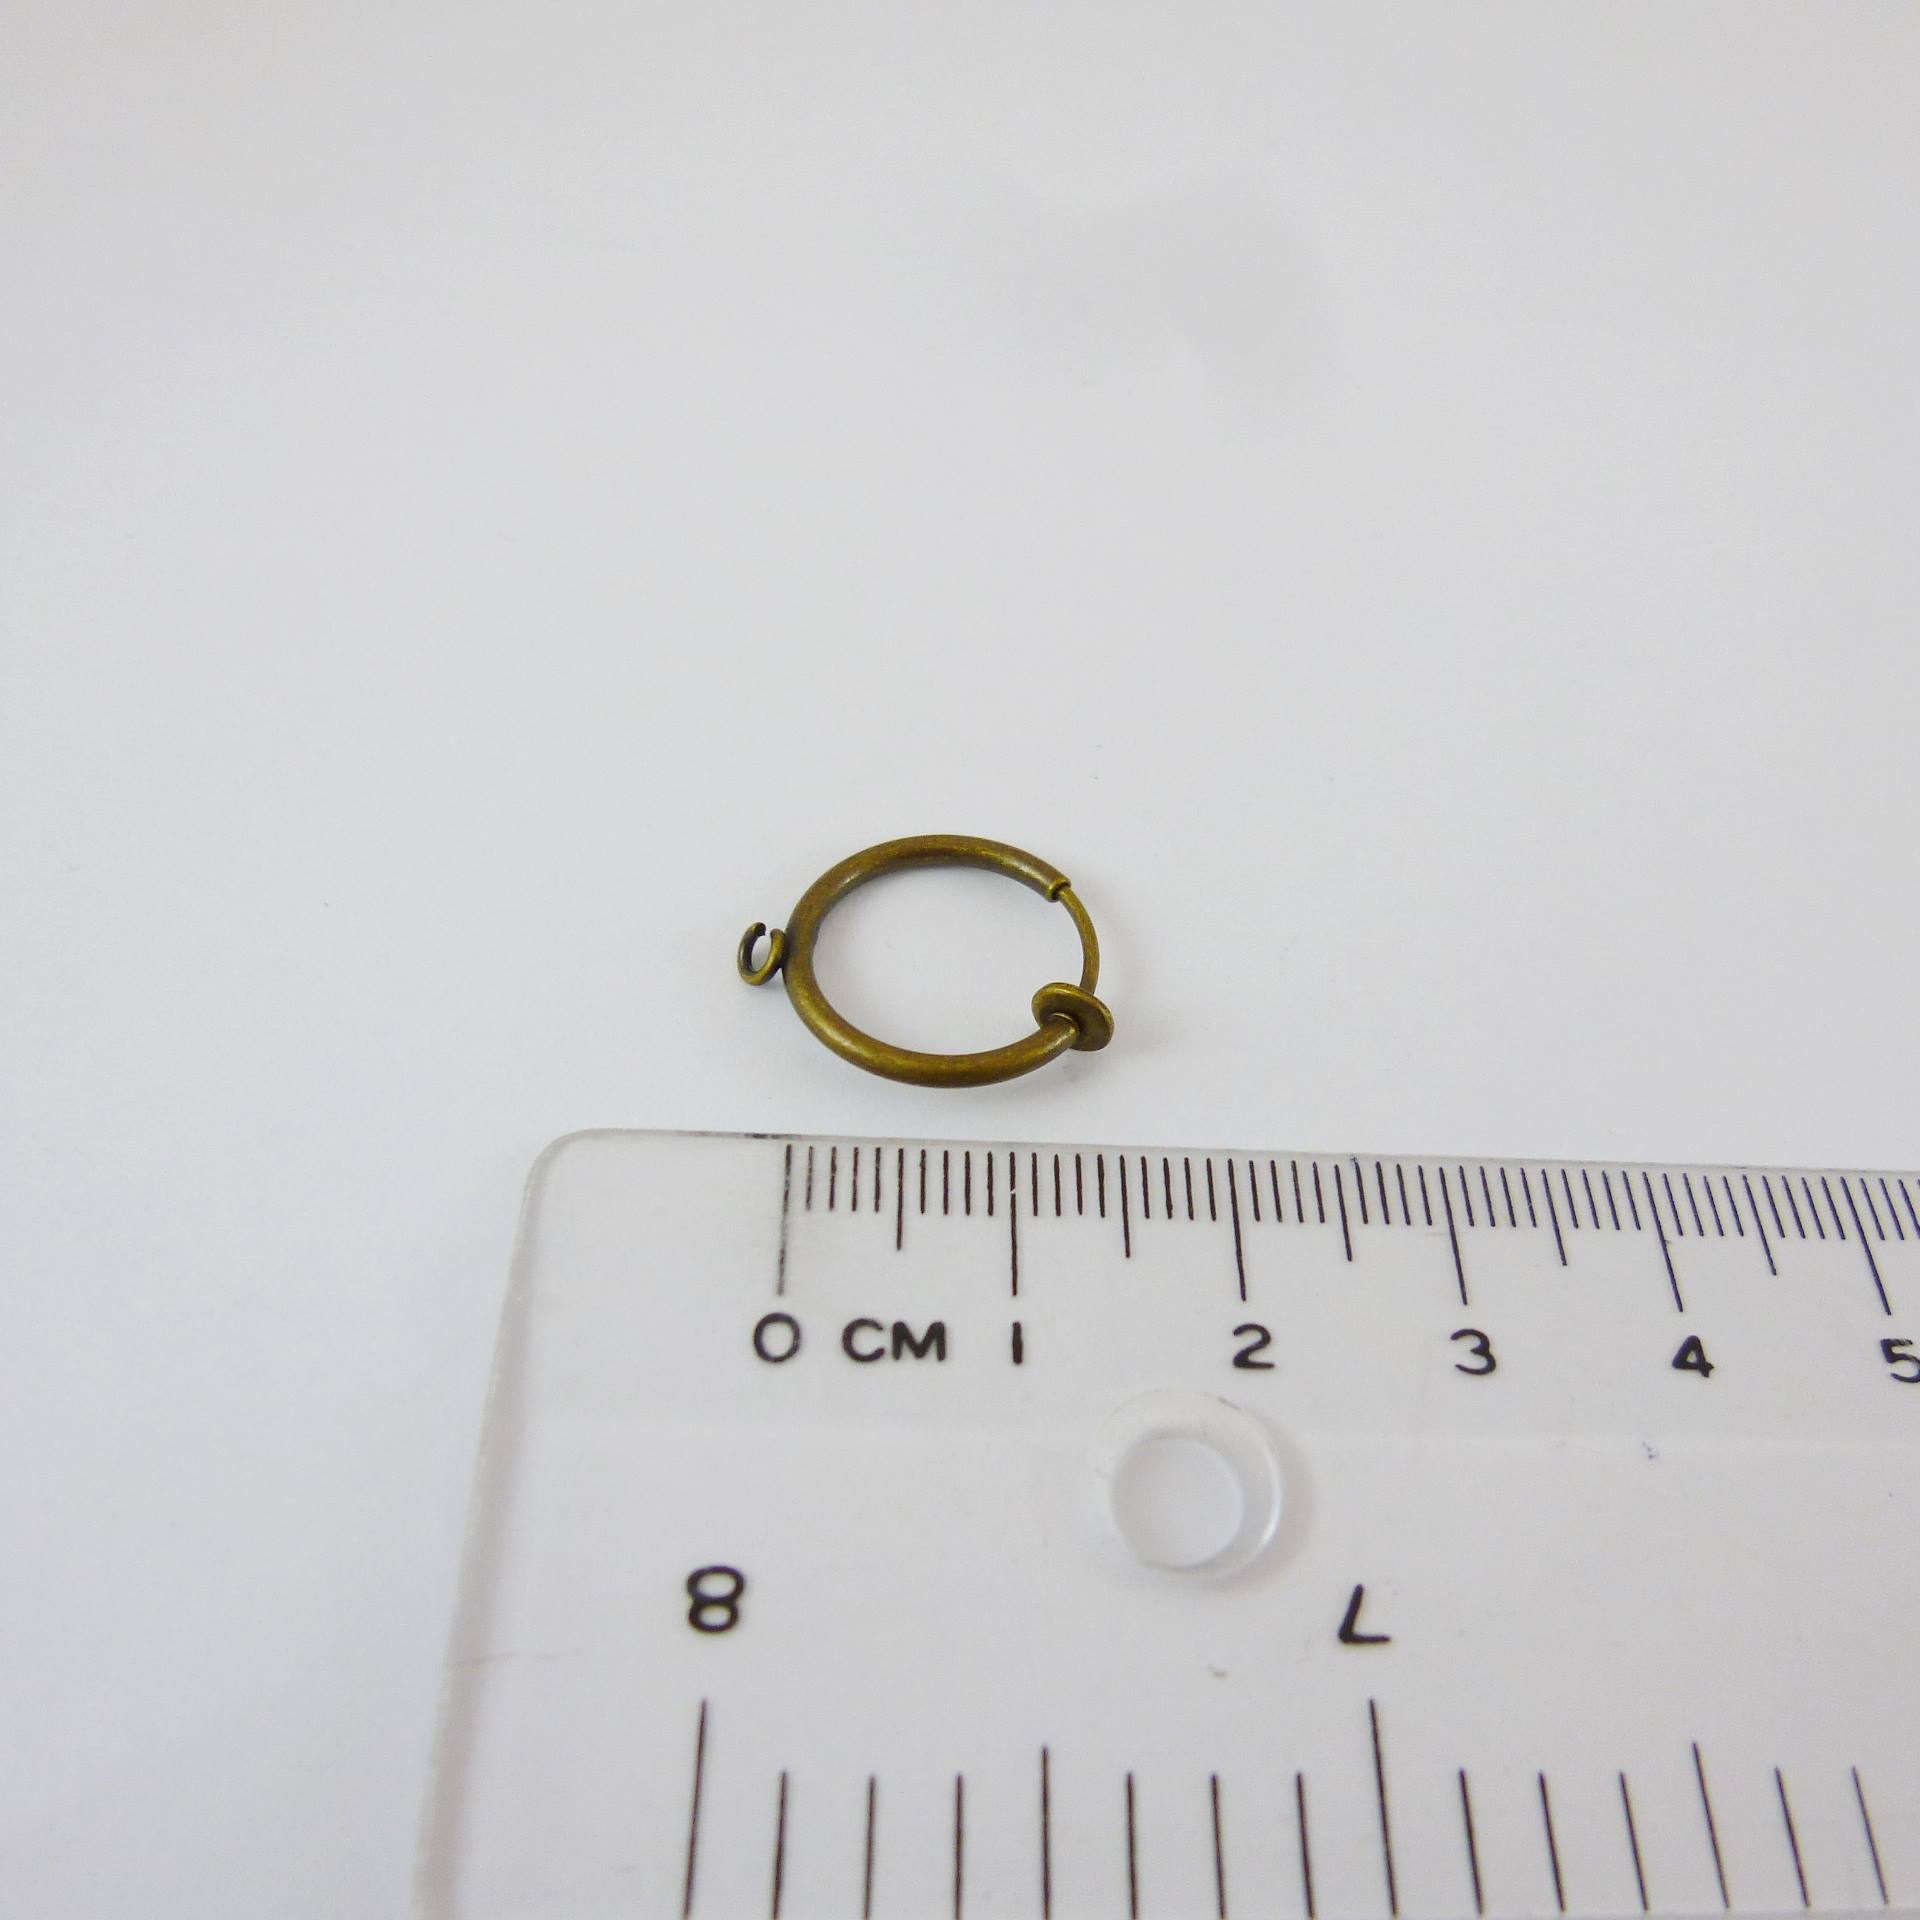 銅鍍青古銅色圓形彈簧耳夾圈-14mm